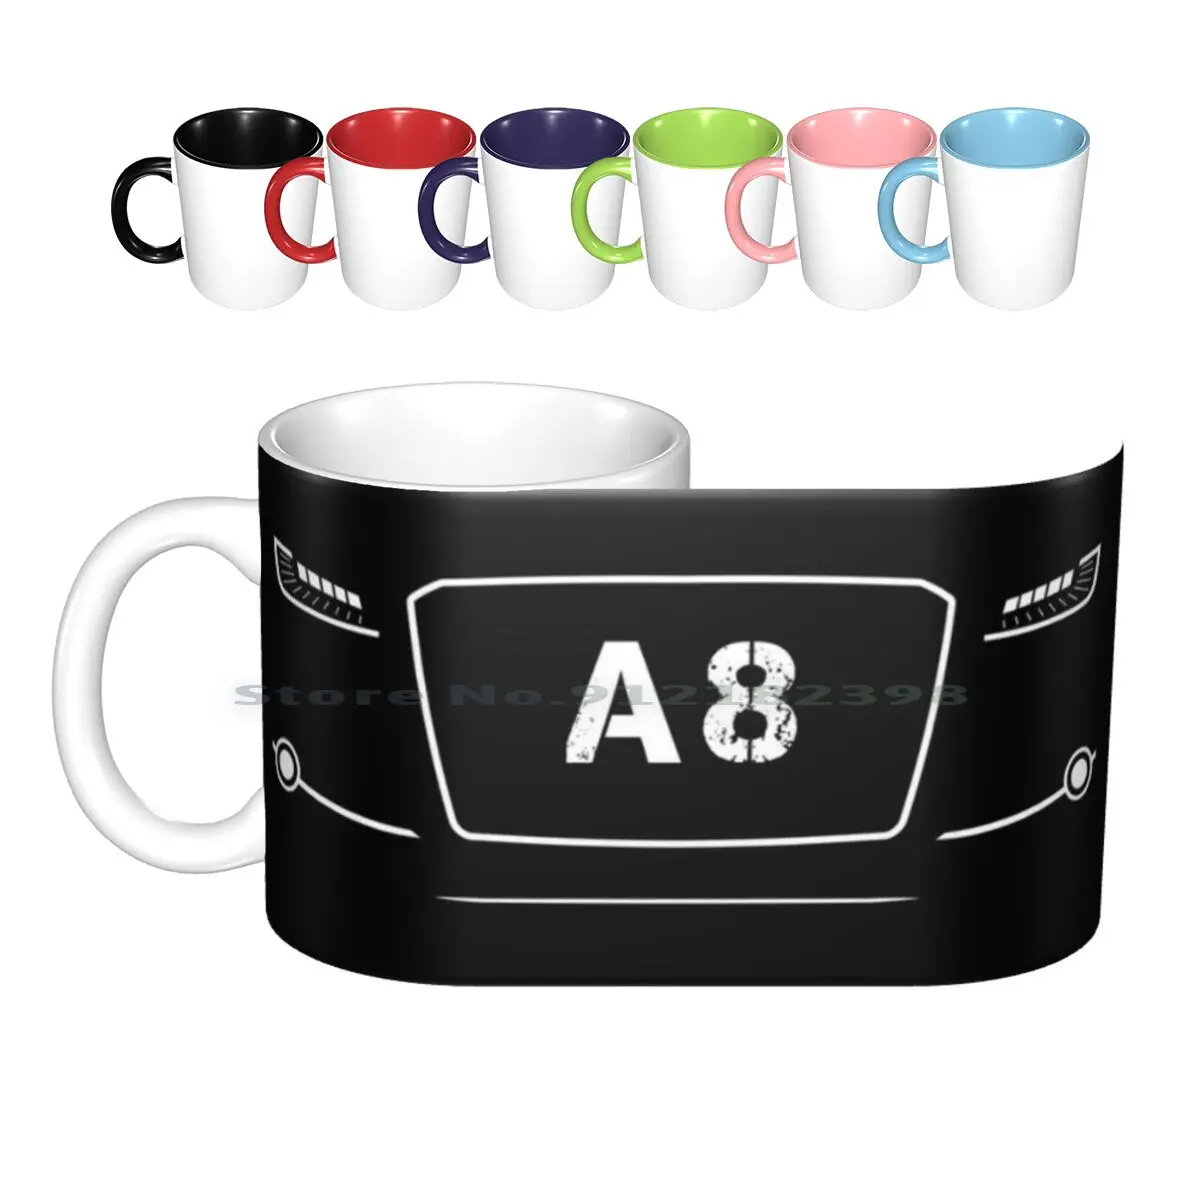 

A8 Ceramic Mugs Coffee Cups Milk Tea Mug A8 S8 Car Racing A8 Cars Rs Lover Avant Rs S8 Racecar Ttrs Turbo A8enthusiast A8 Lover